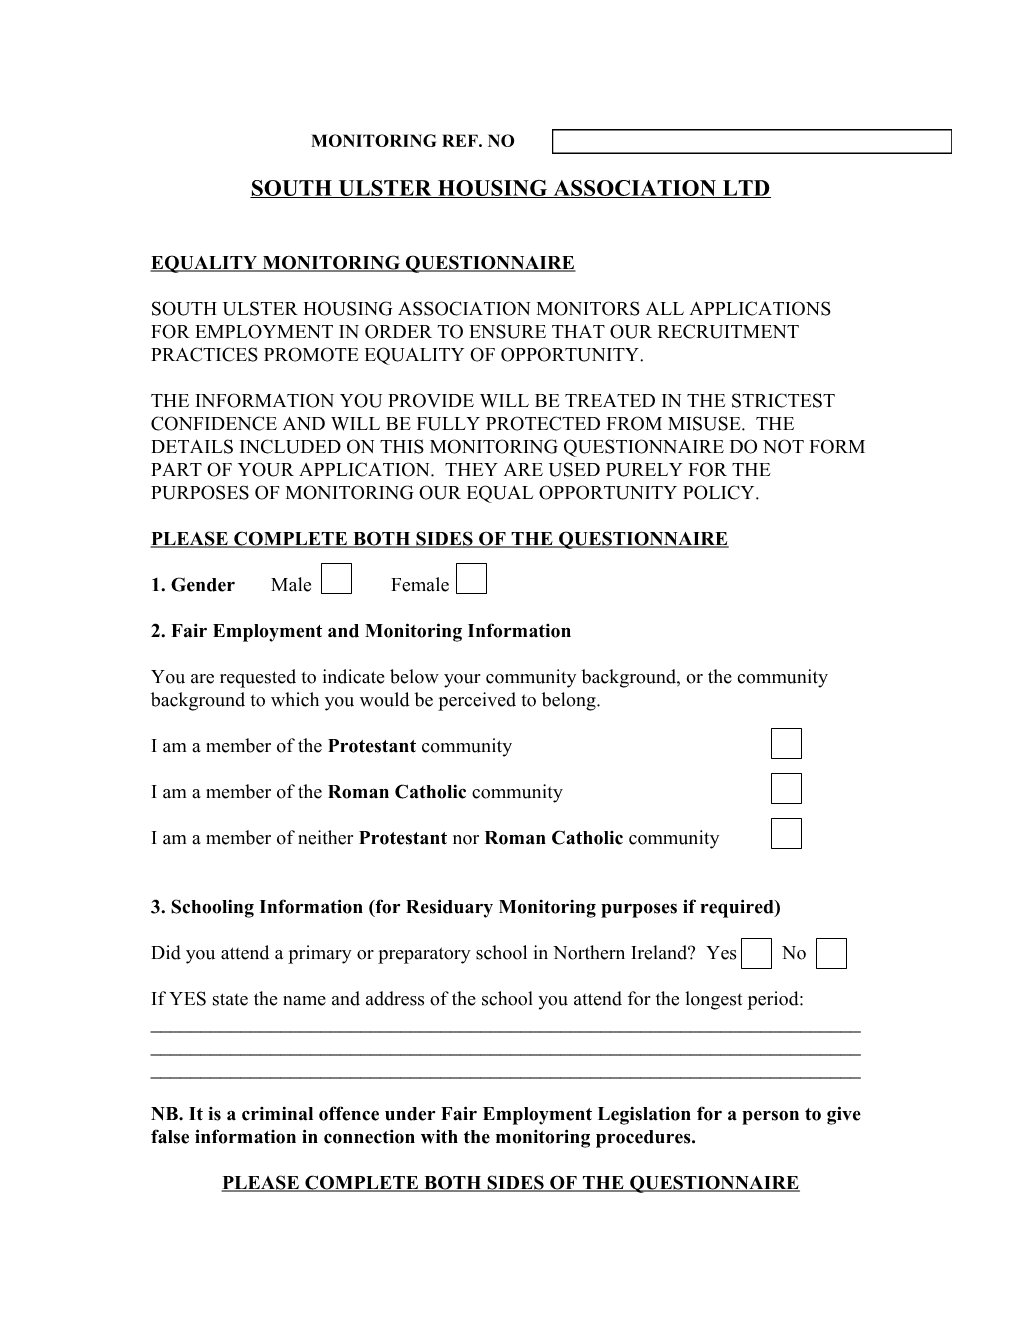 South Ulster Housing Association Ltd